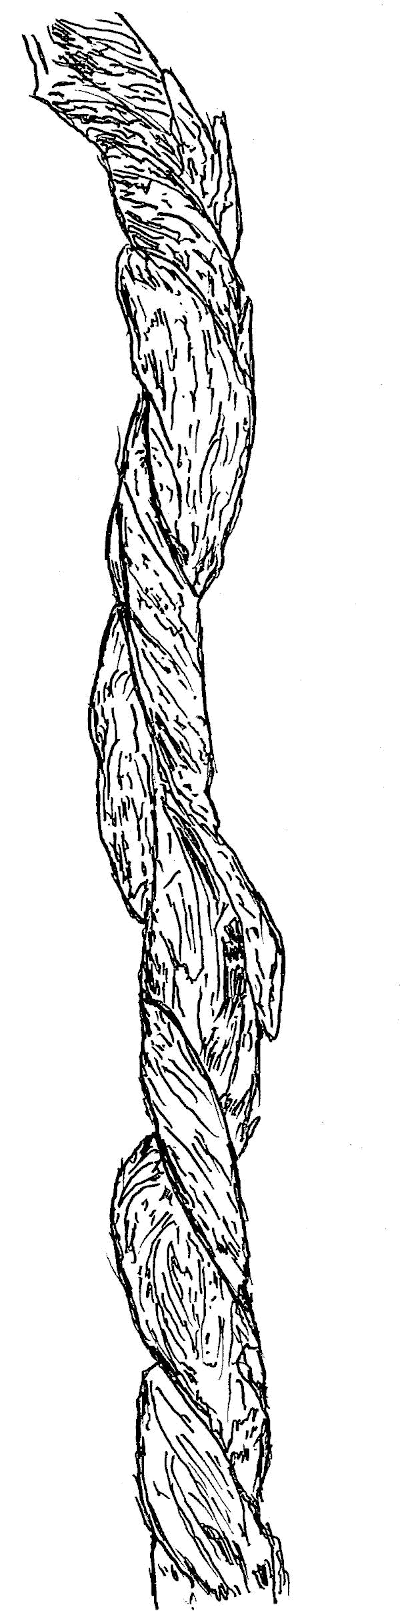 Sketch of Honeysuckle (Lonicera l.) vines.